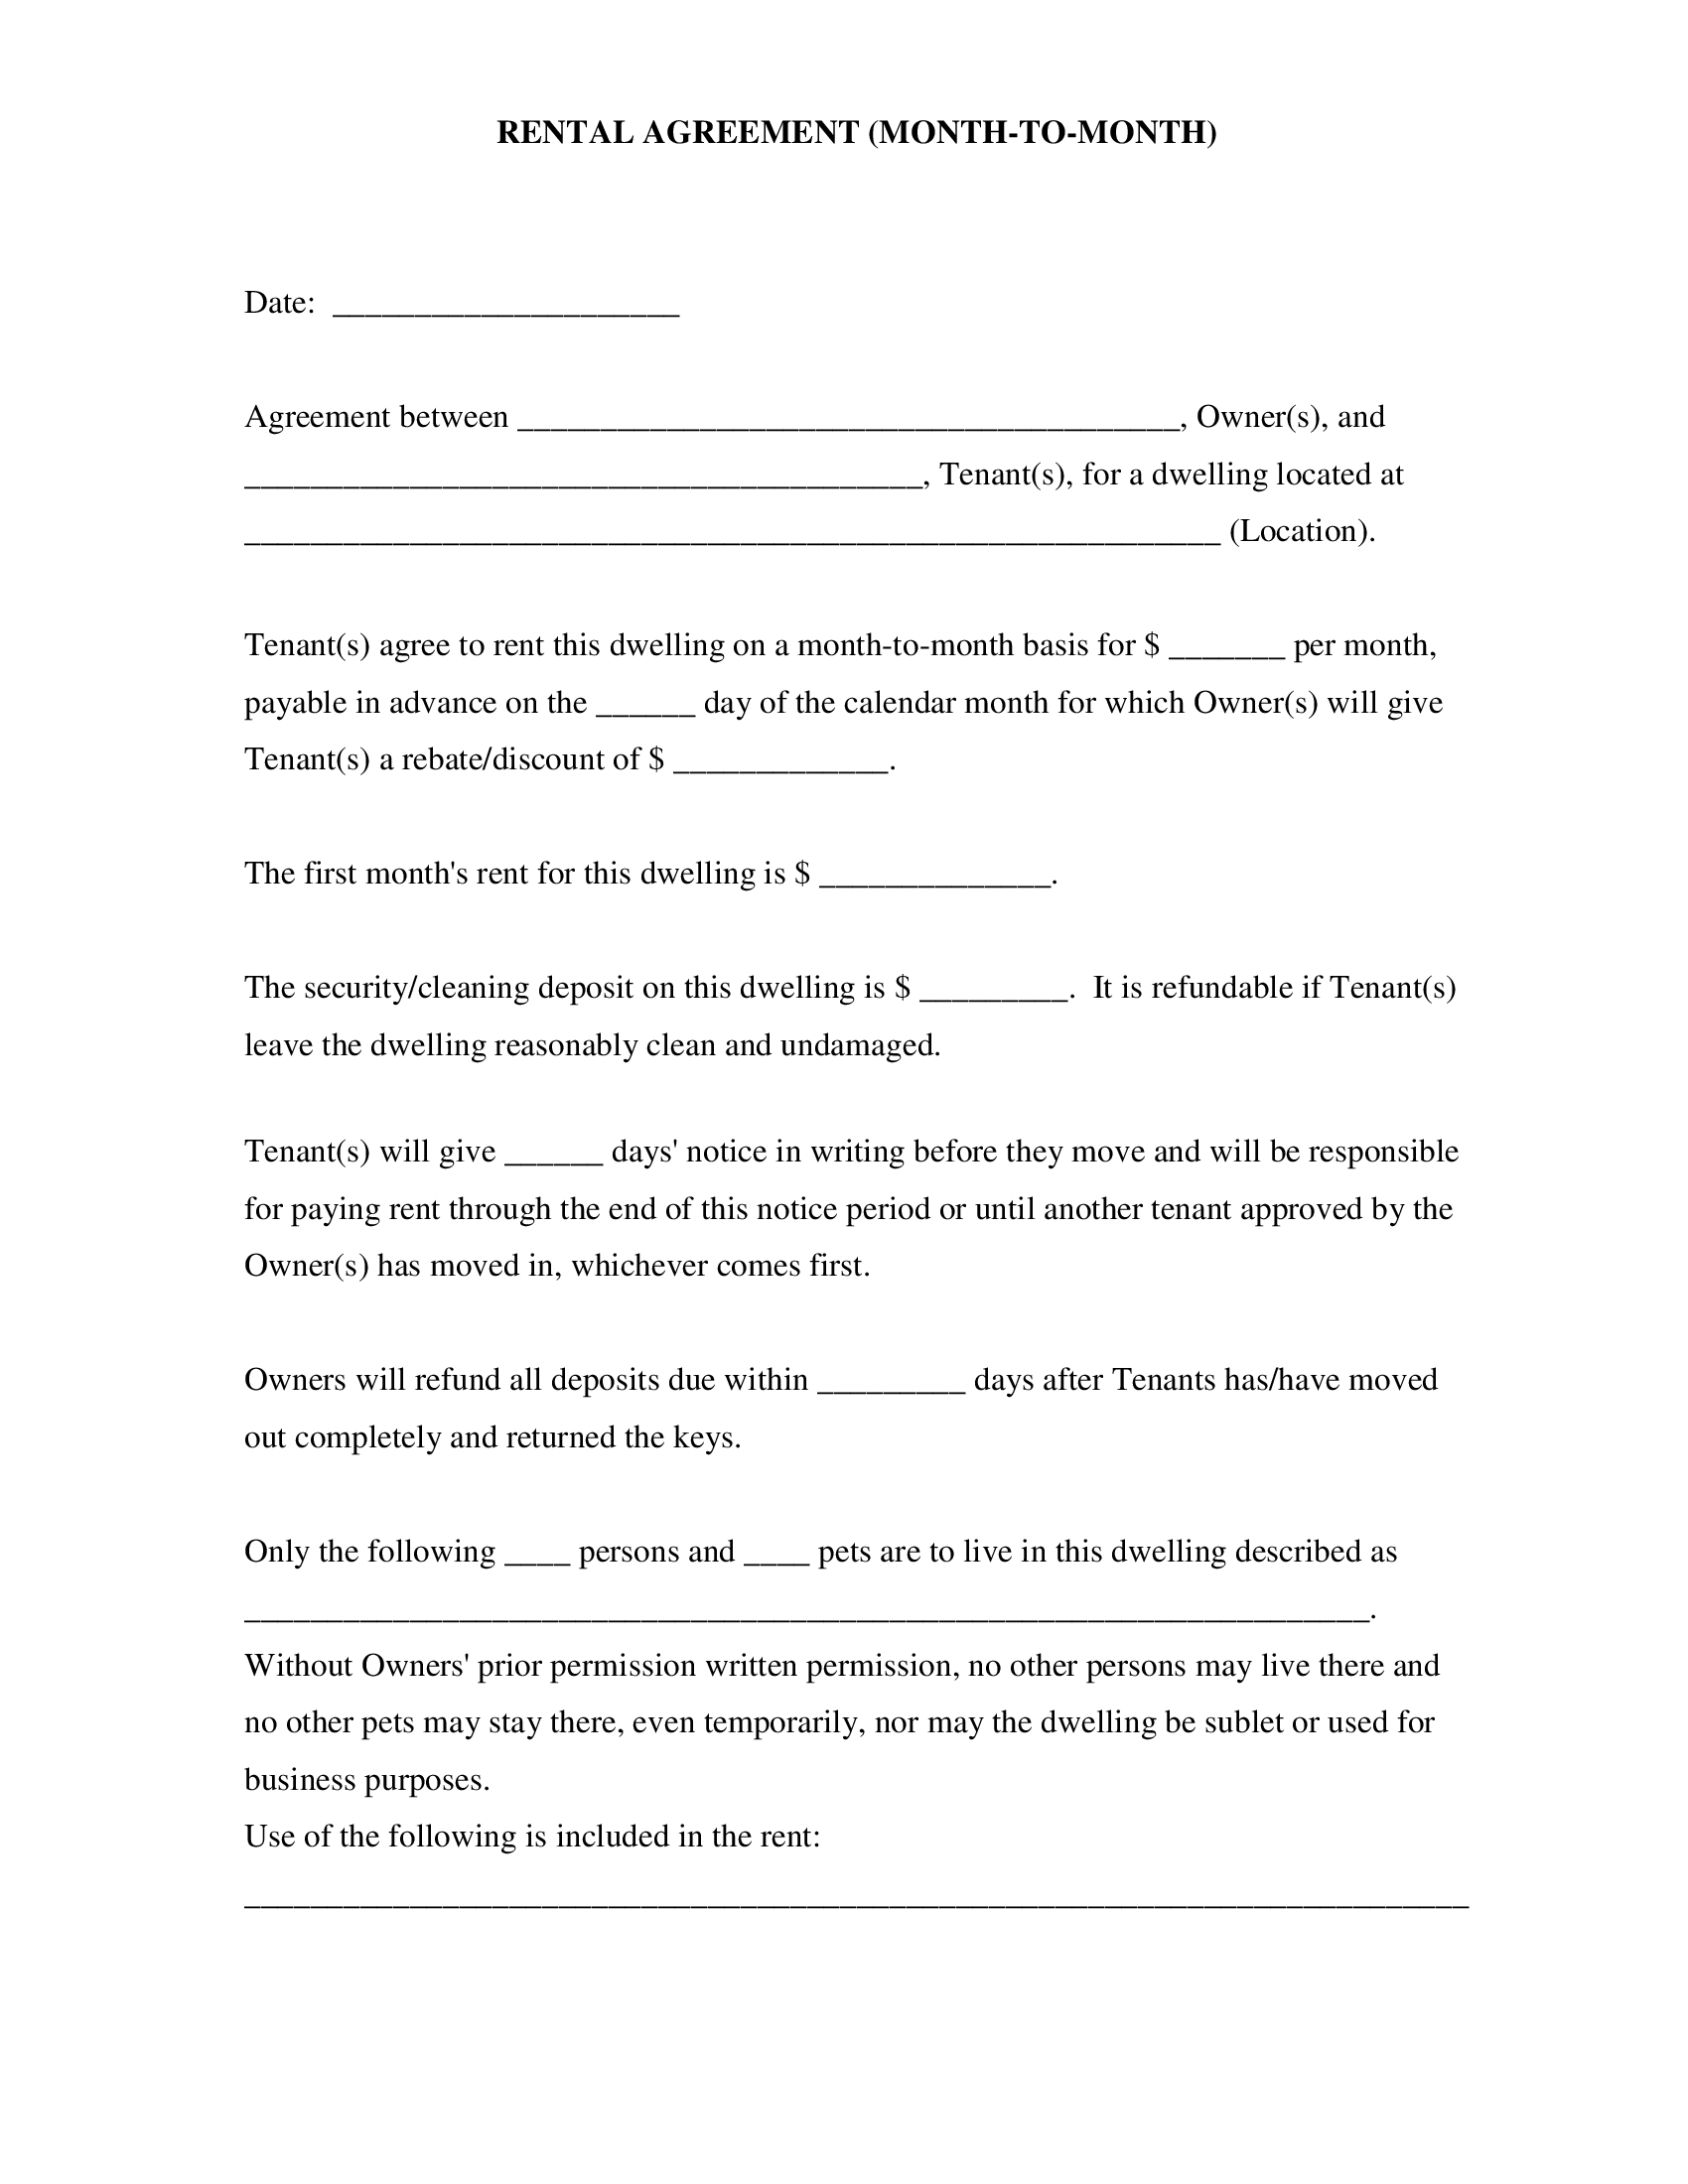 Rental Agreement Form on PDFLiner